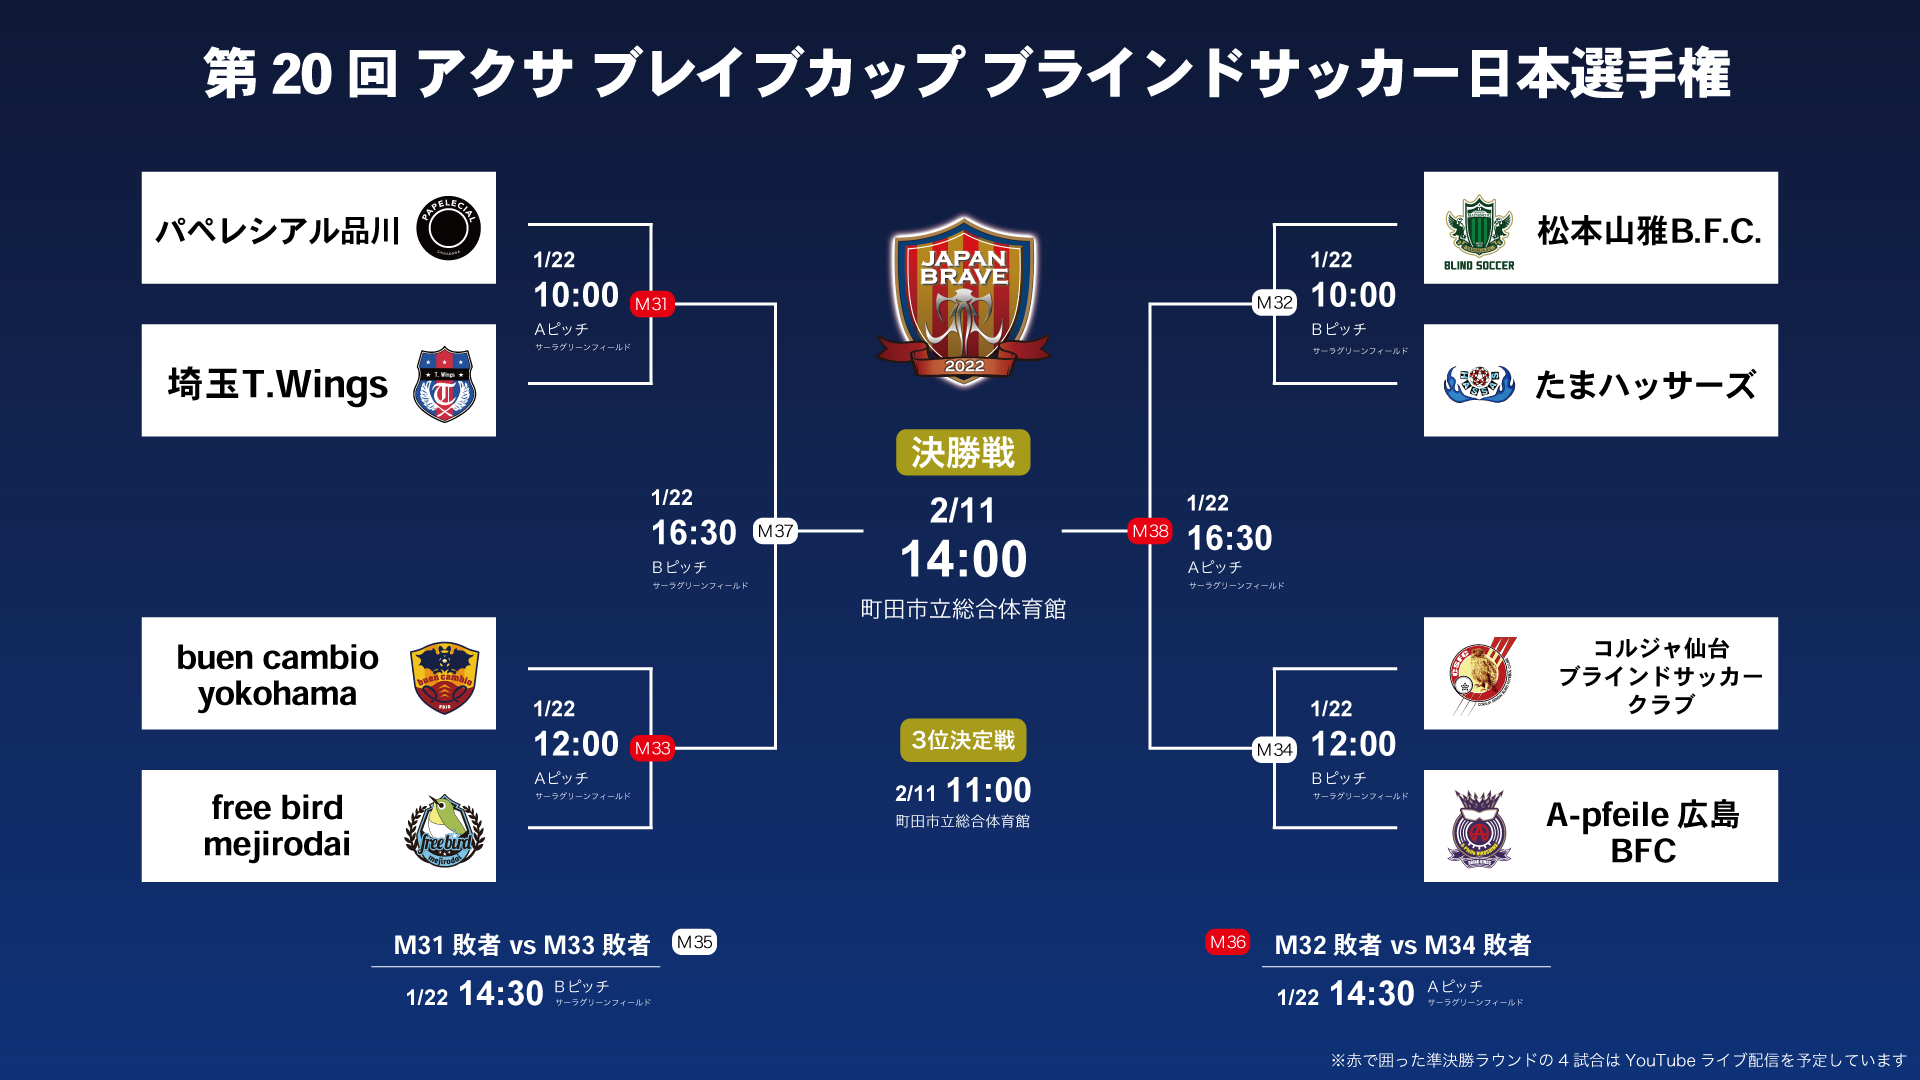 第20回 アクサ ブレイブカップ ブラインドサッカー日本選手権 準決勝ラウンドトーナメント表